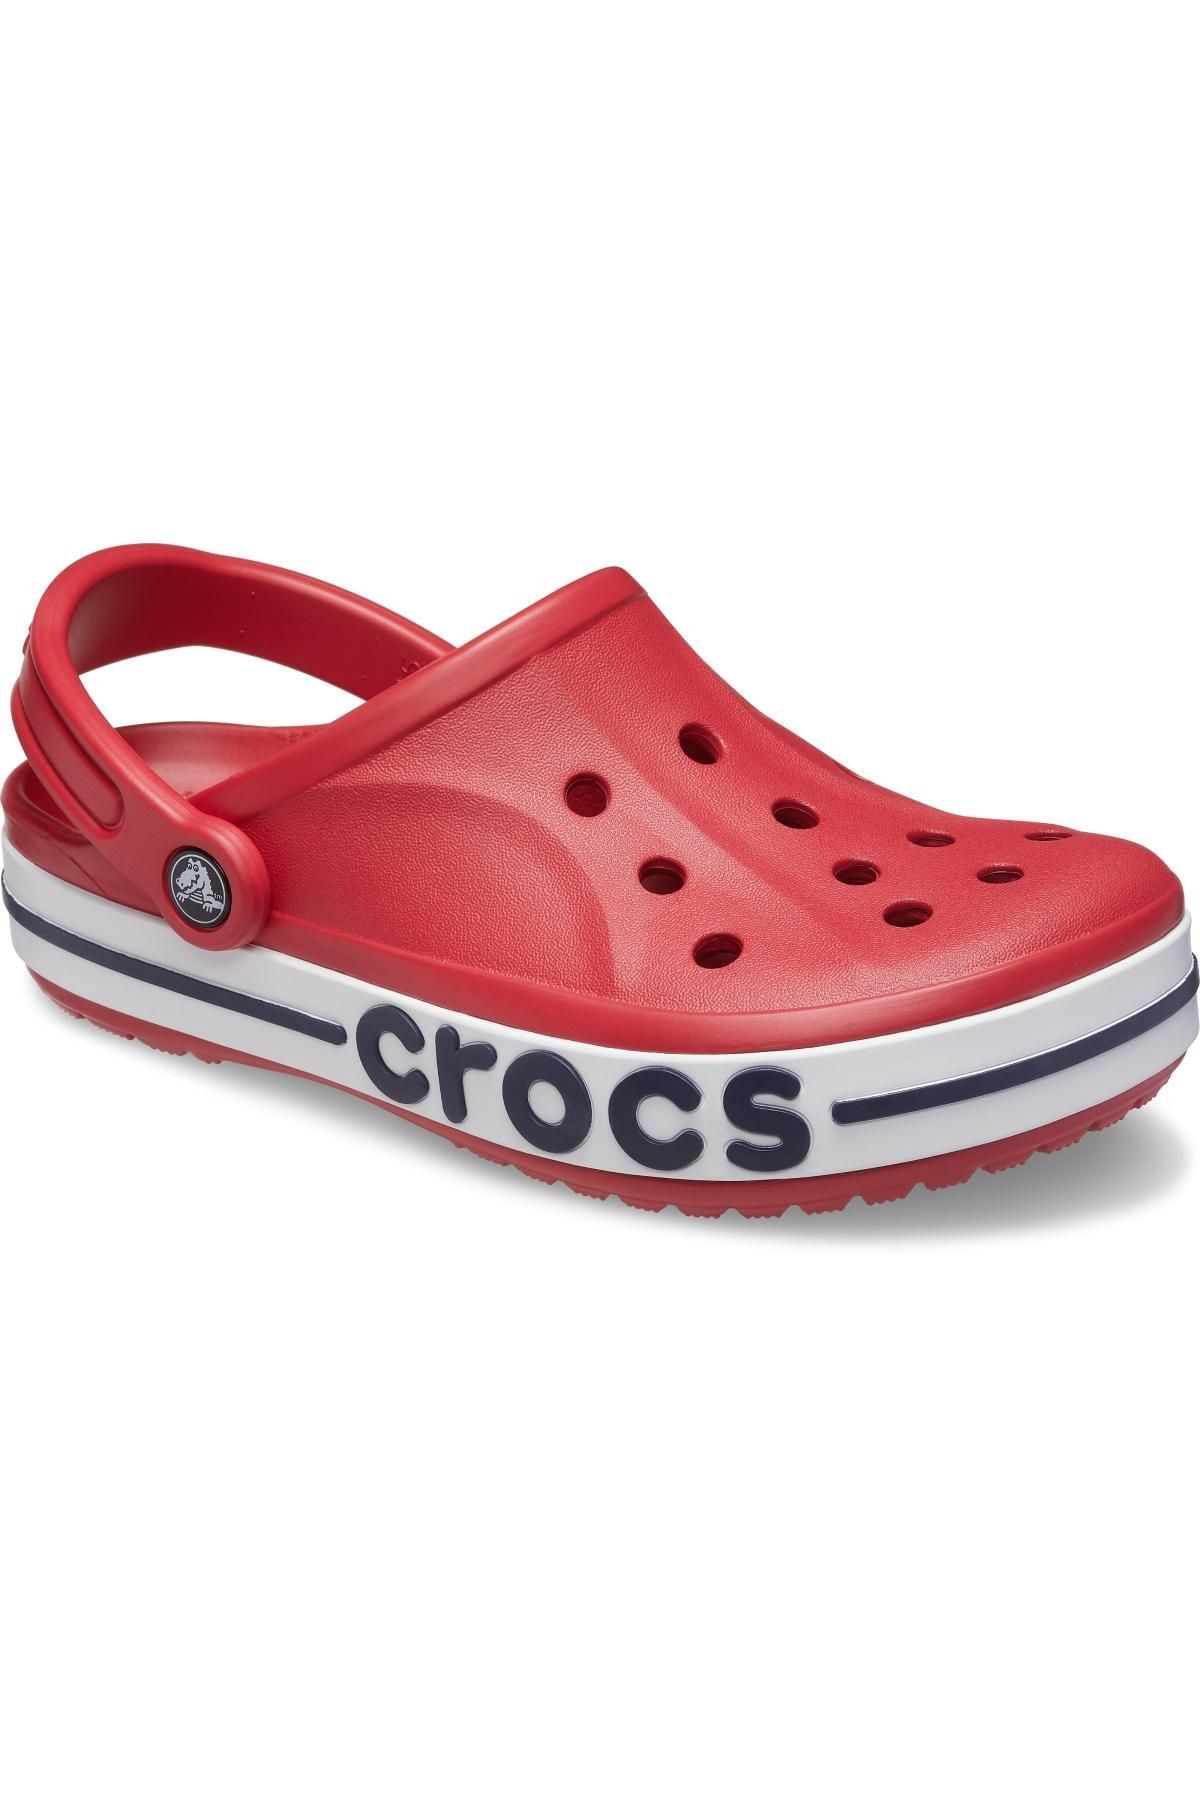 Crocs 205089 Bayaband Clog Kırmızı Unisex Terlik